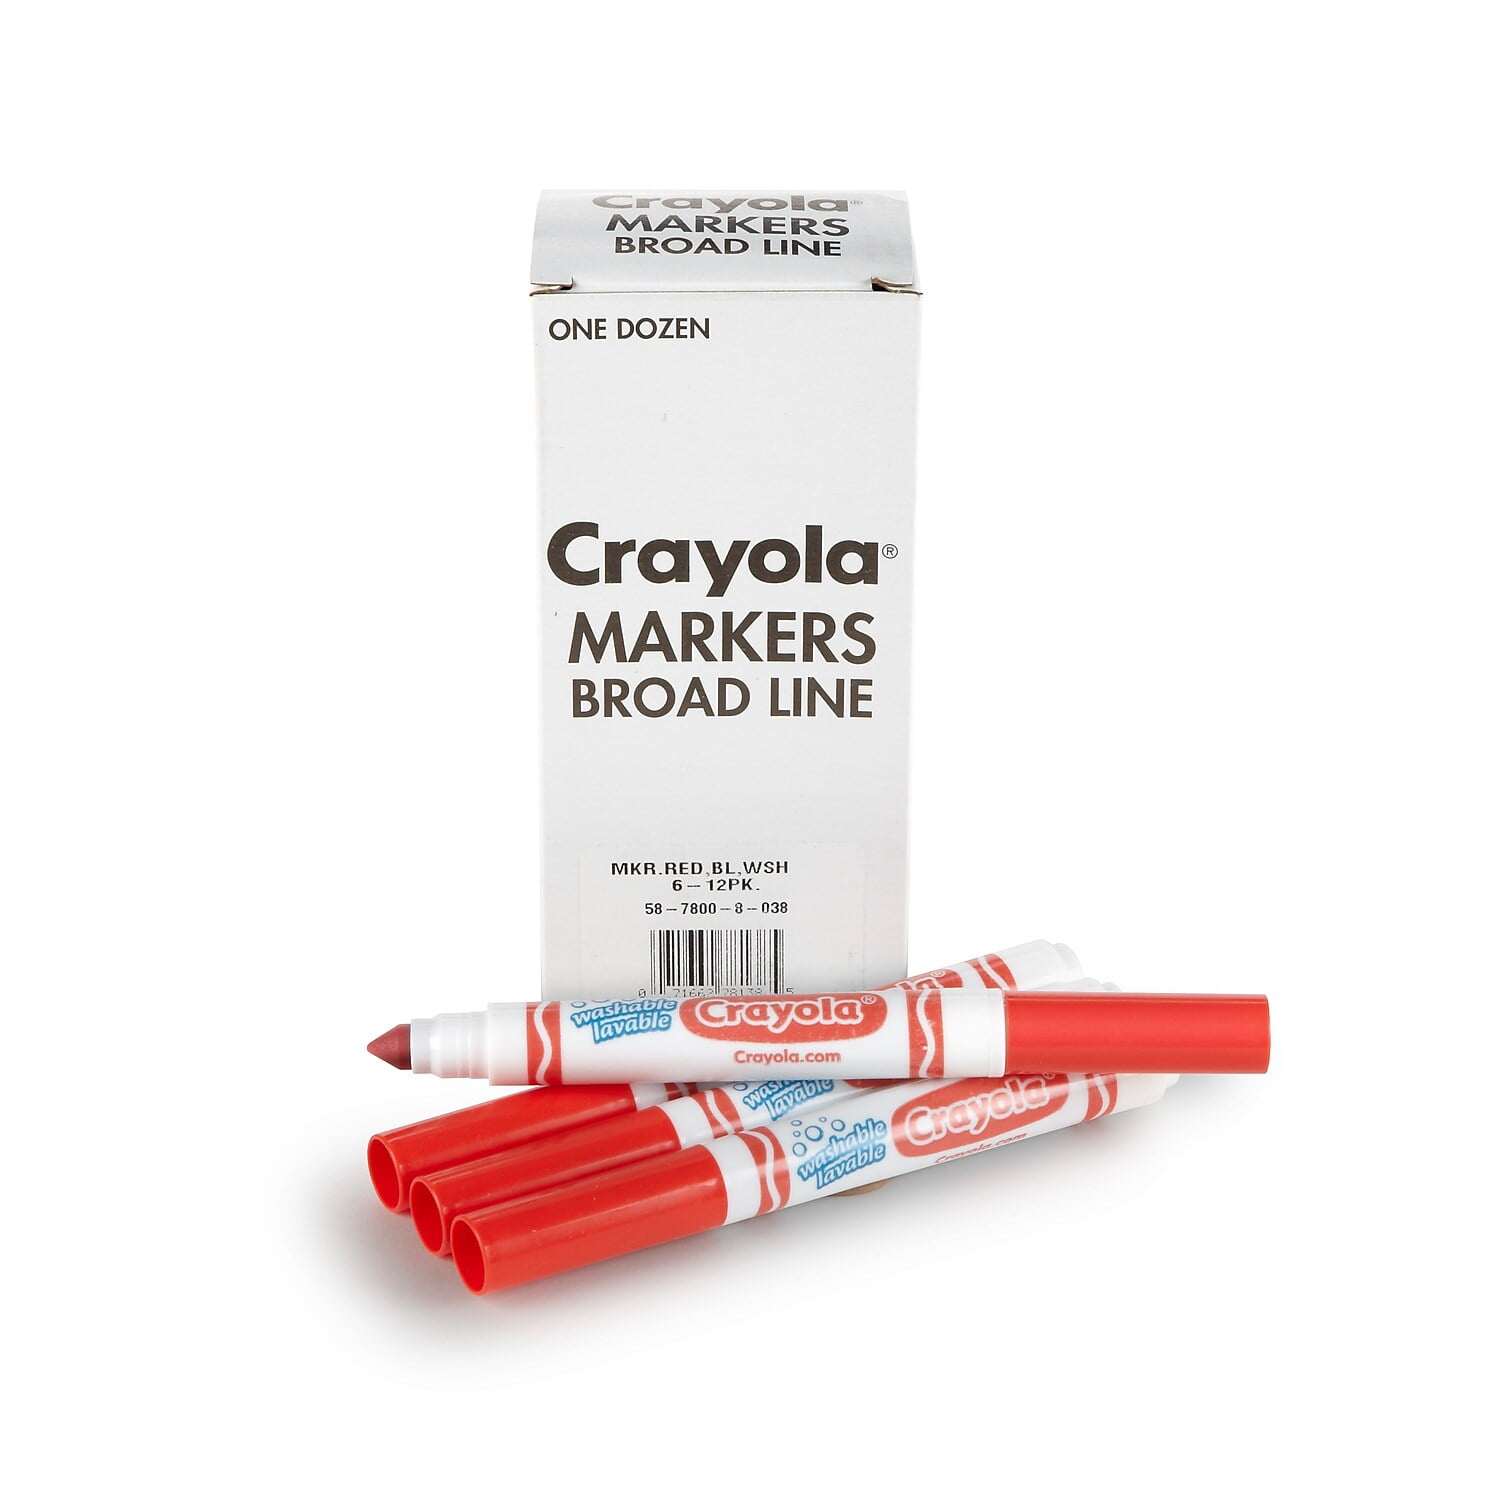  SILENART Chalk Markers Fine Tipe 1mm - 8 Pack - Dry & Wet  Erase Marker Pens - Chalkboad Markers for Kids, Liquid Chalk Markers  Erasbale, Window Markers for Car Glass